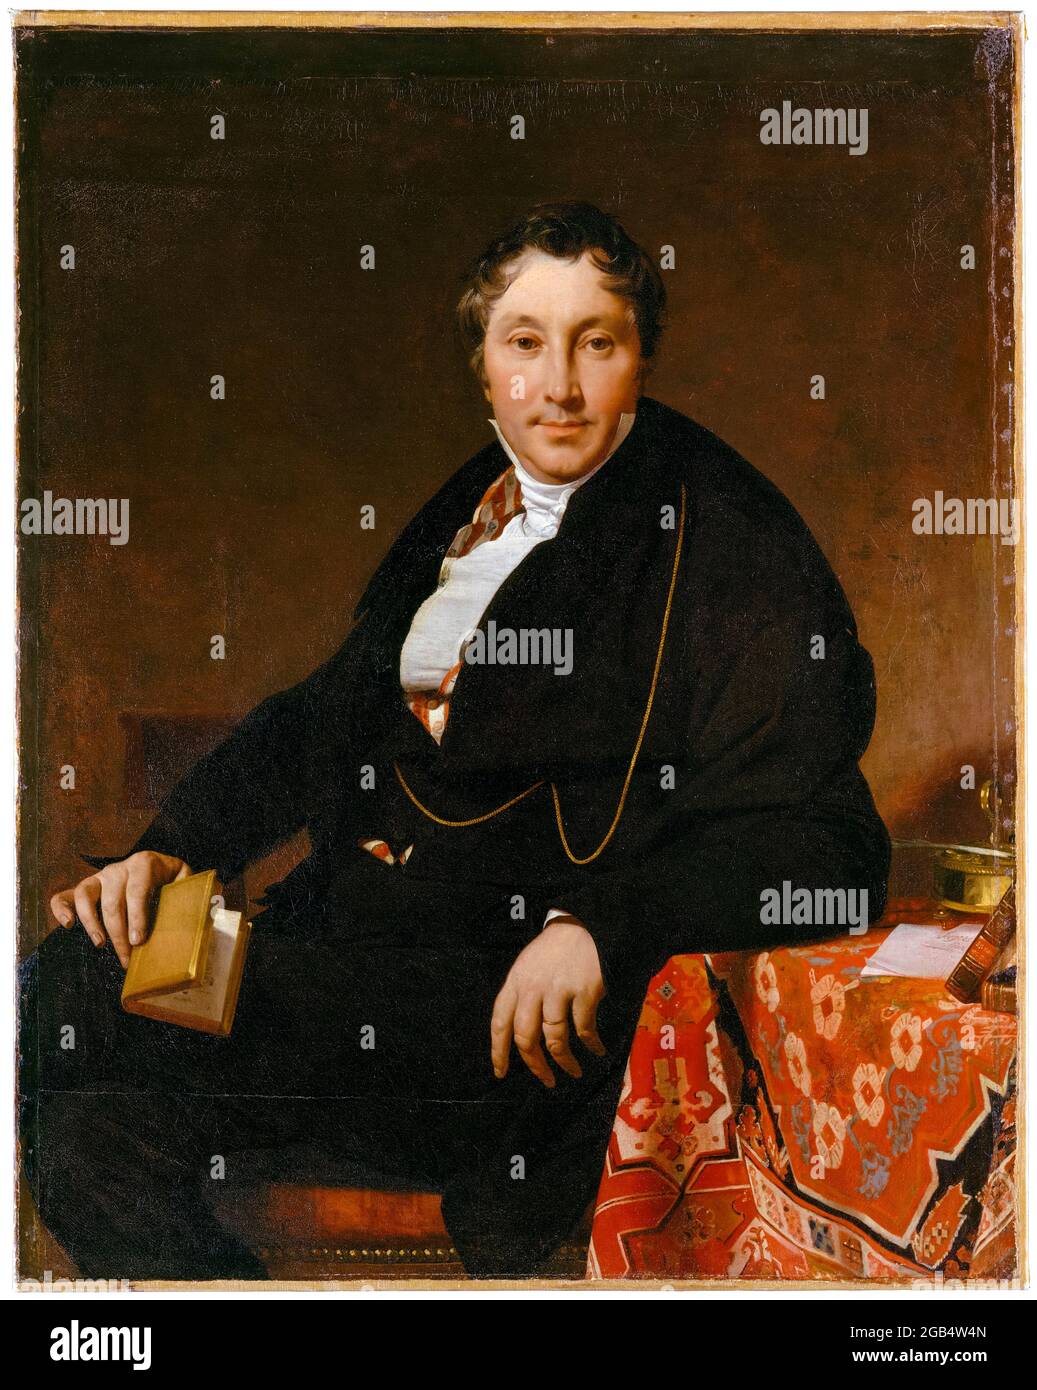 Jacques-Louis Leblanc (1774-1846), portrait peint par Jean Auguste Dominique Ingres, 1823 Banque D'Images